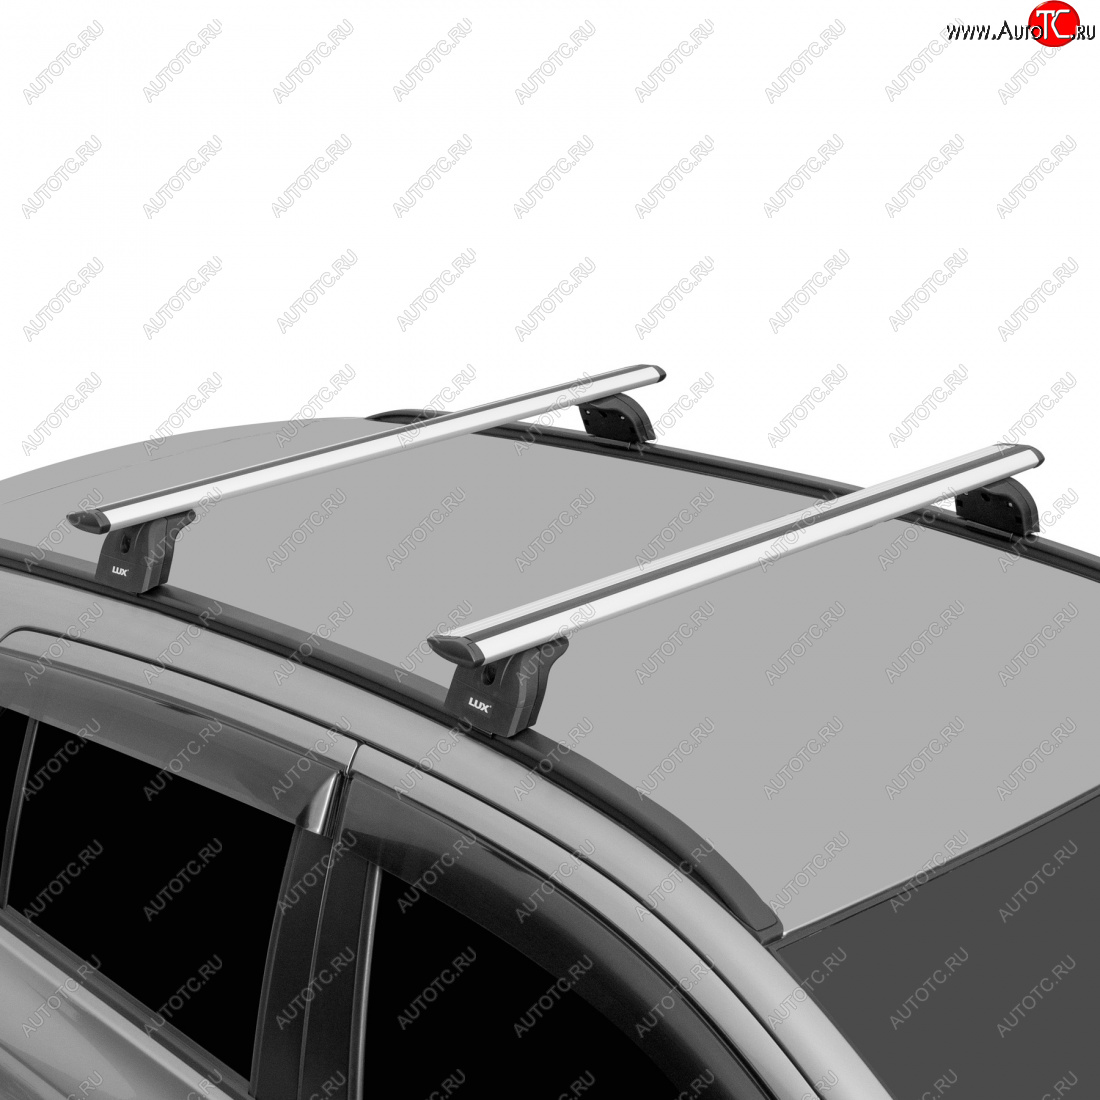 13 196 р. Багажник на крышу с низкими рейлингами сборе LUX  Volvo XC60 (2008-2017) (дуги аэро-трэвэл 120 см, с замком, серебро)